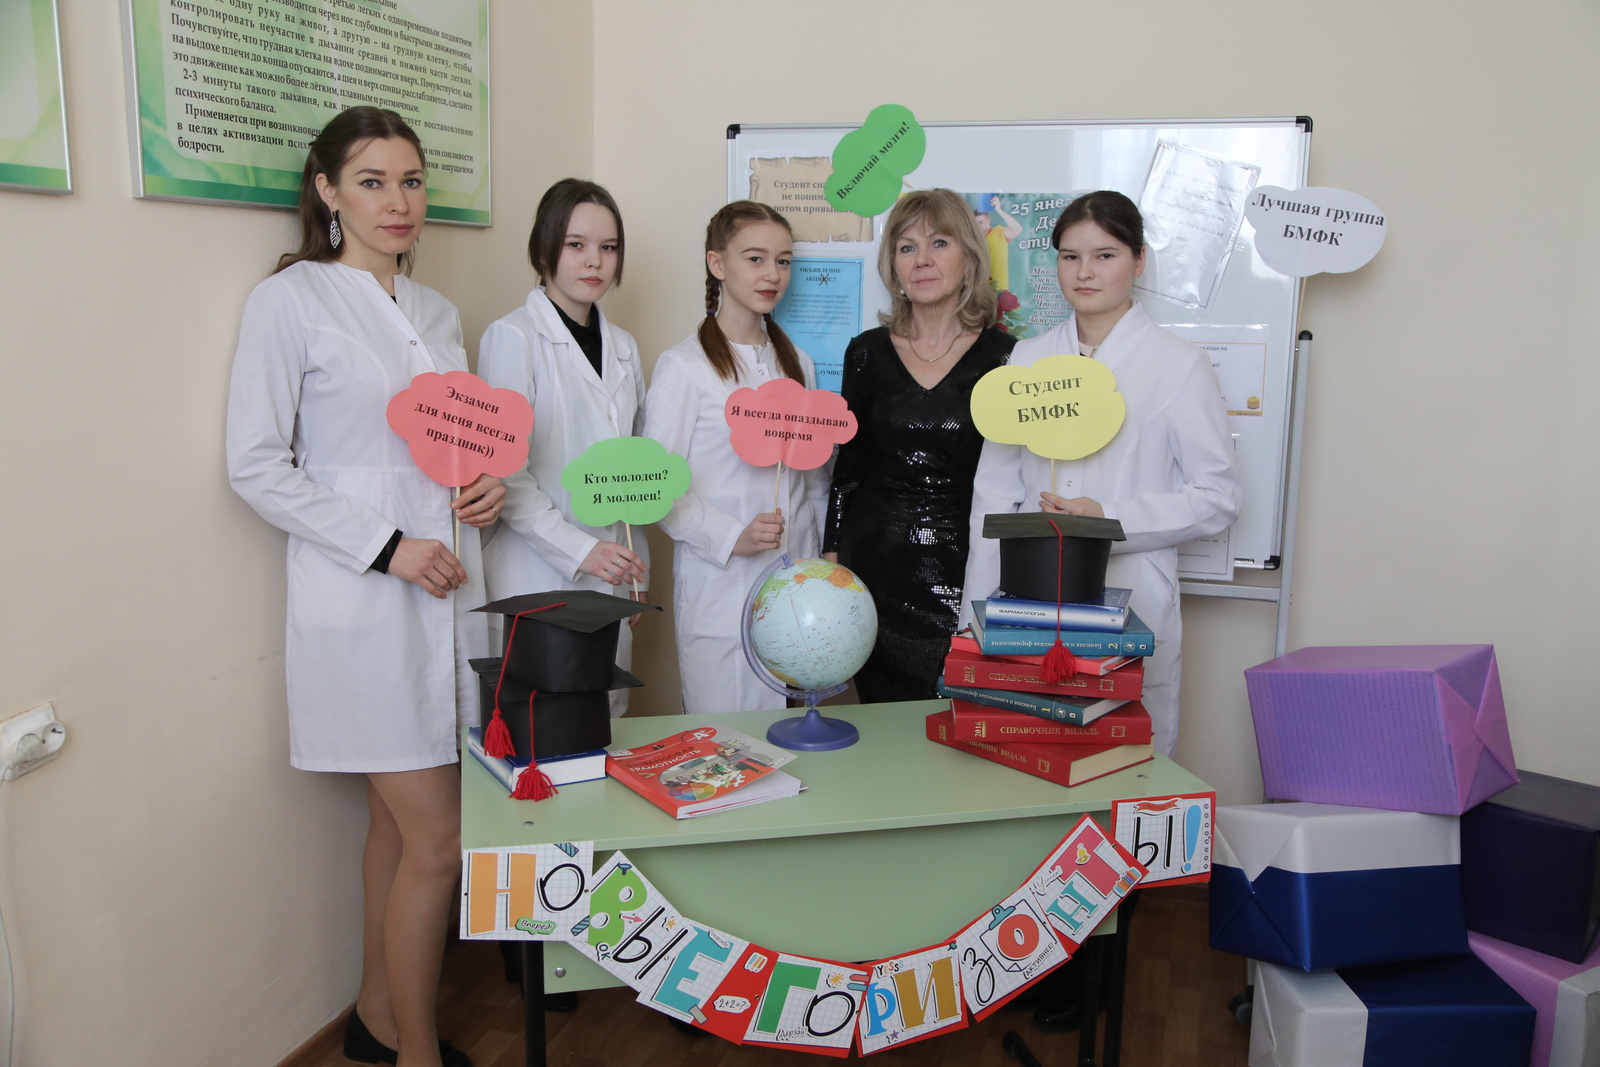 25 января отмечается сразу два праздника—Татьянин день и День российского студенчества